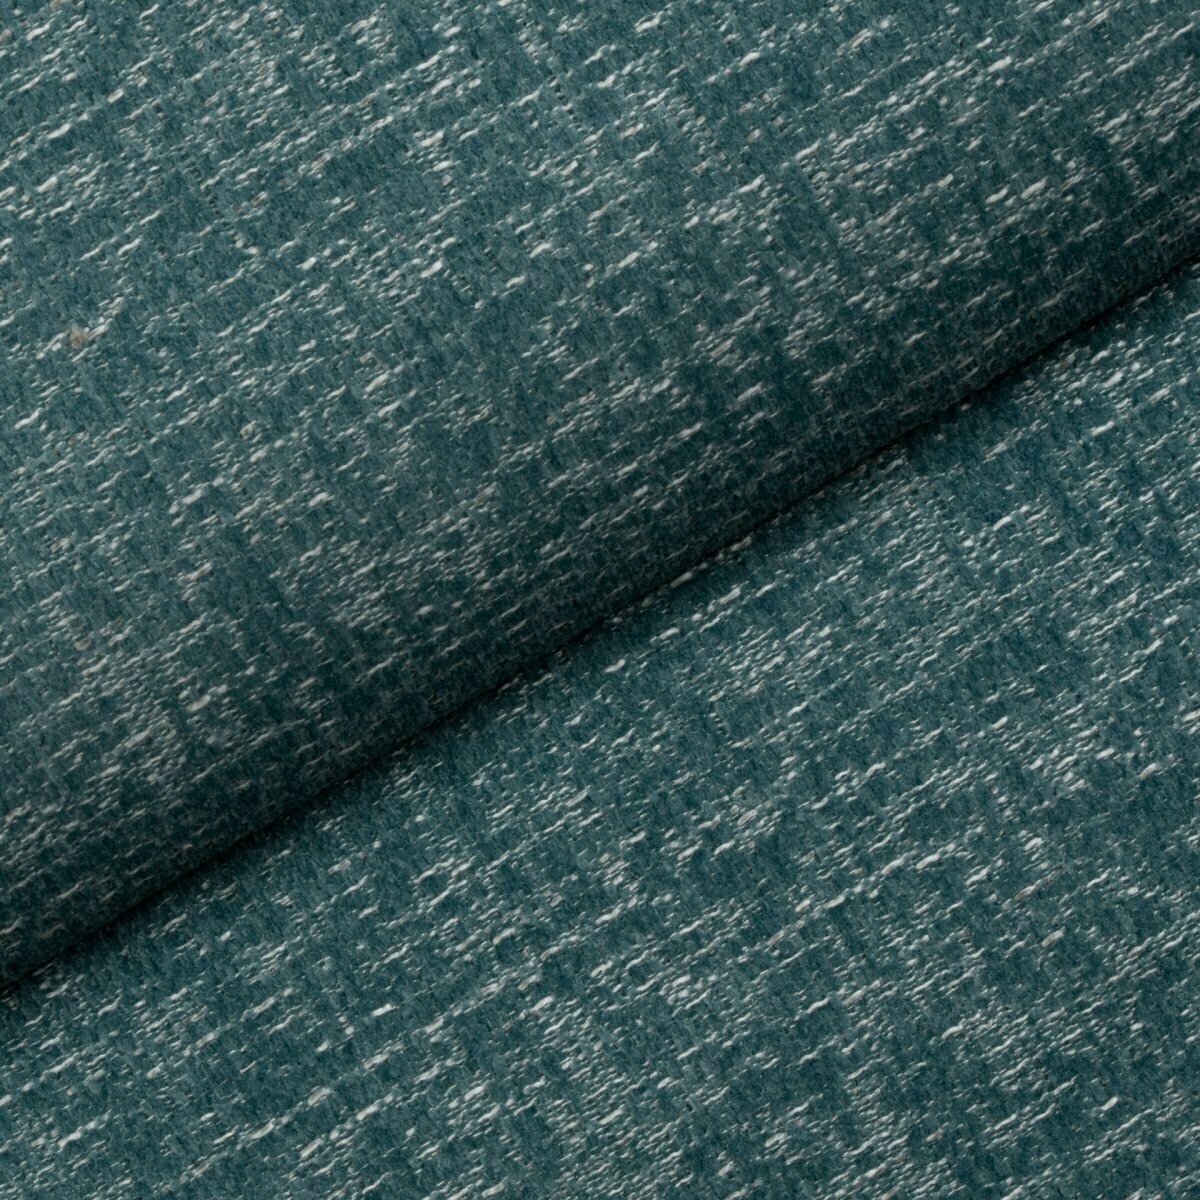 Wytrzymała tkanina Luna 04 Fargotex w kolorze niebieskim. Intrygująca barwa i pleciona struktura to jego cechy charakterystyczne.